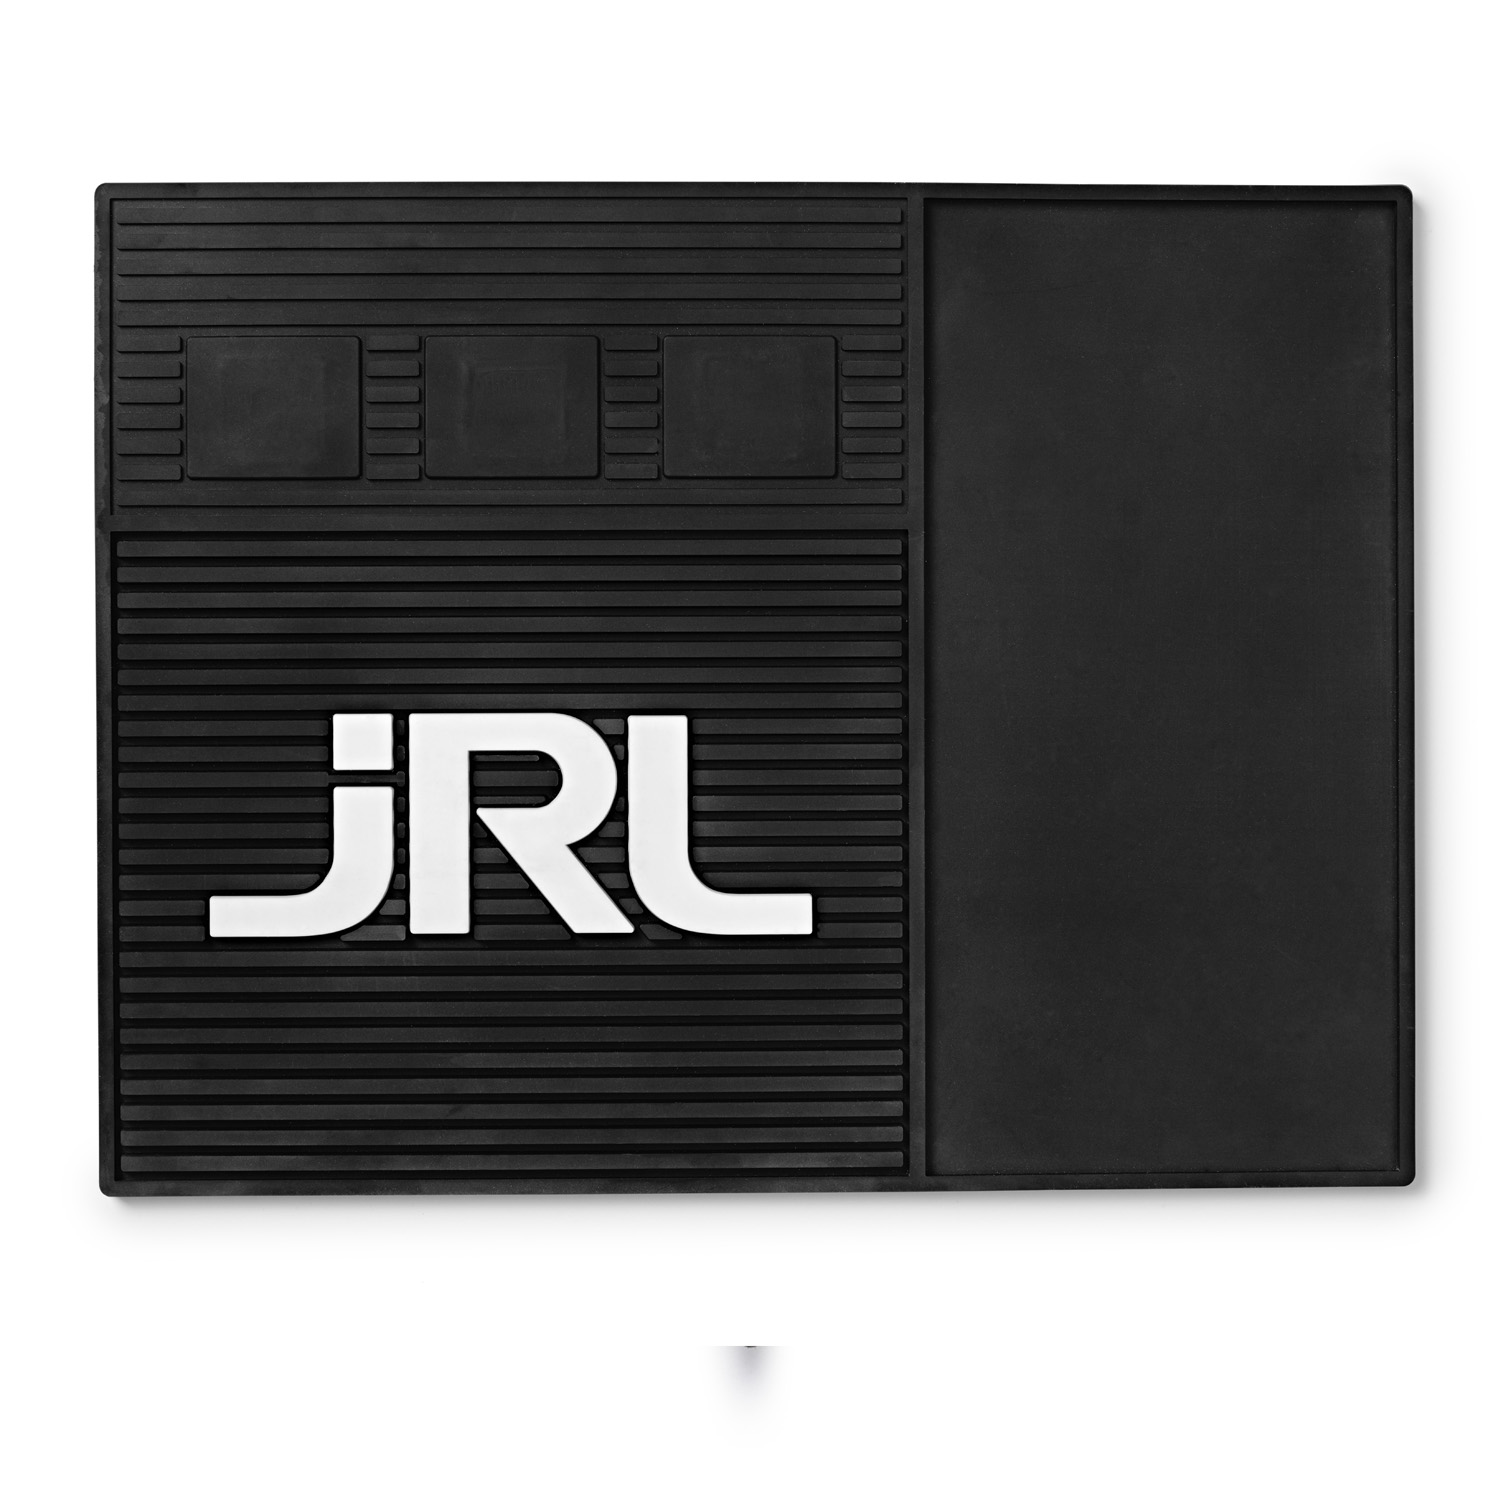 JRL Magnetic Mat - magnetická podložka na strojky a příslušenství